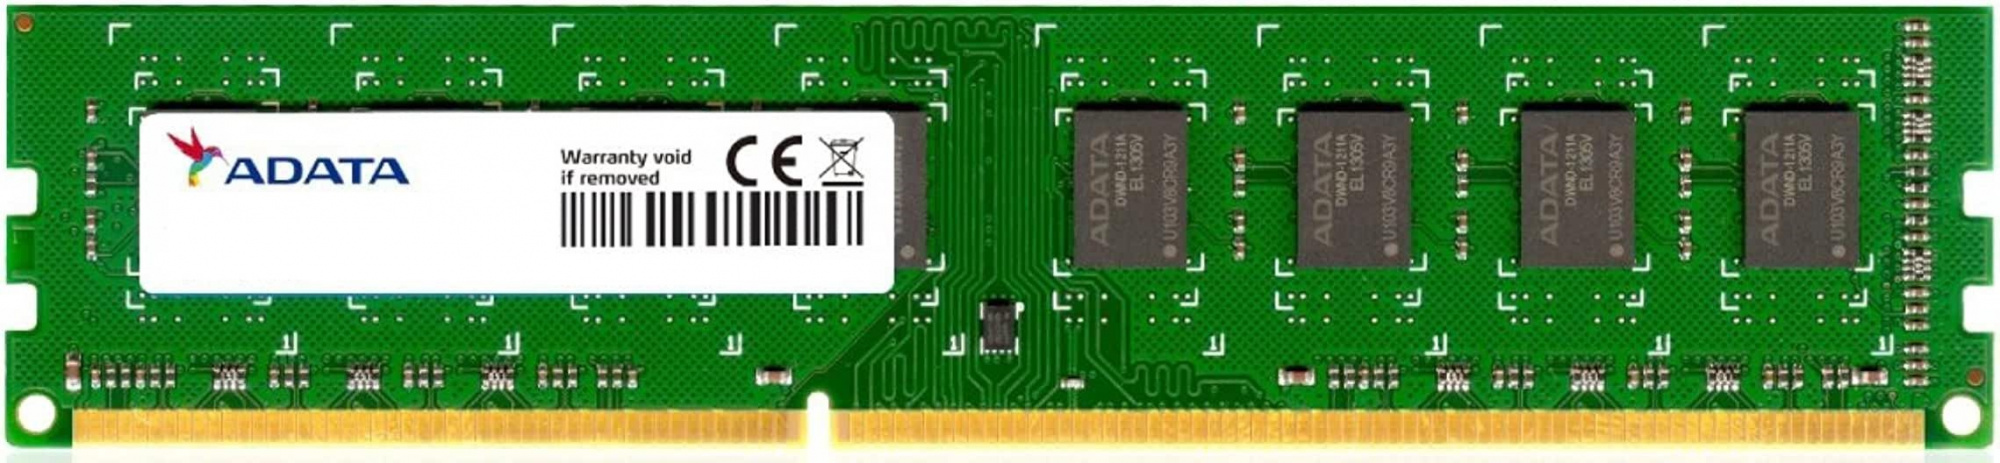 Память A-DATA DDR3L 8Gb 1600MHz PC3L-12800 (ADDX1600W8G11-SGN)